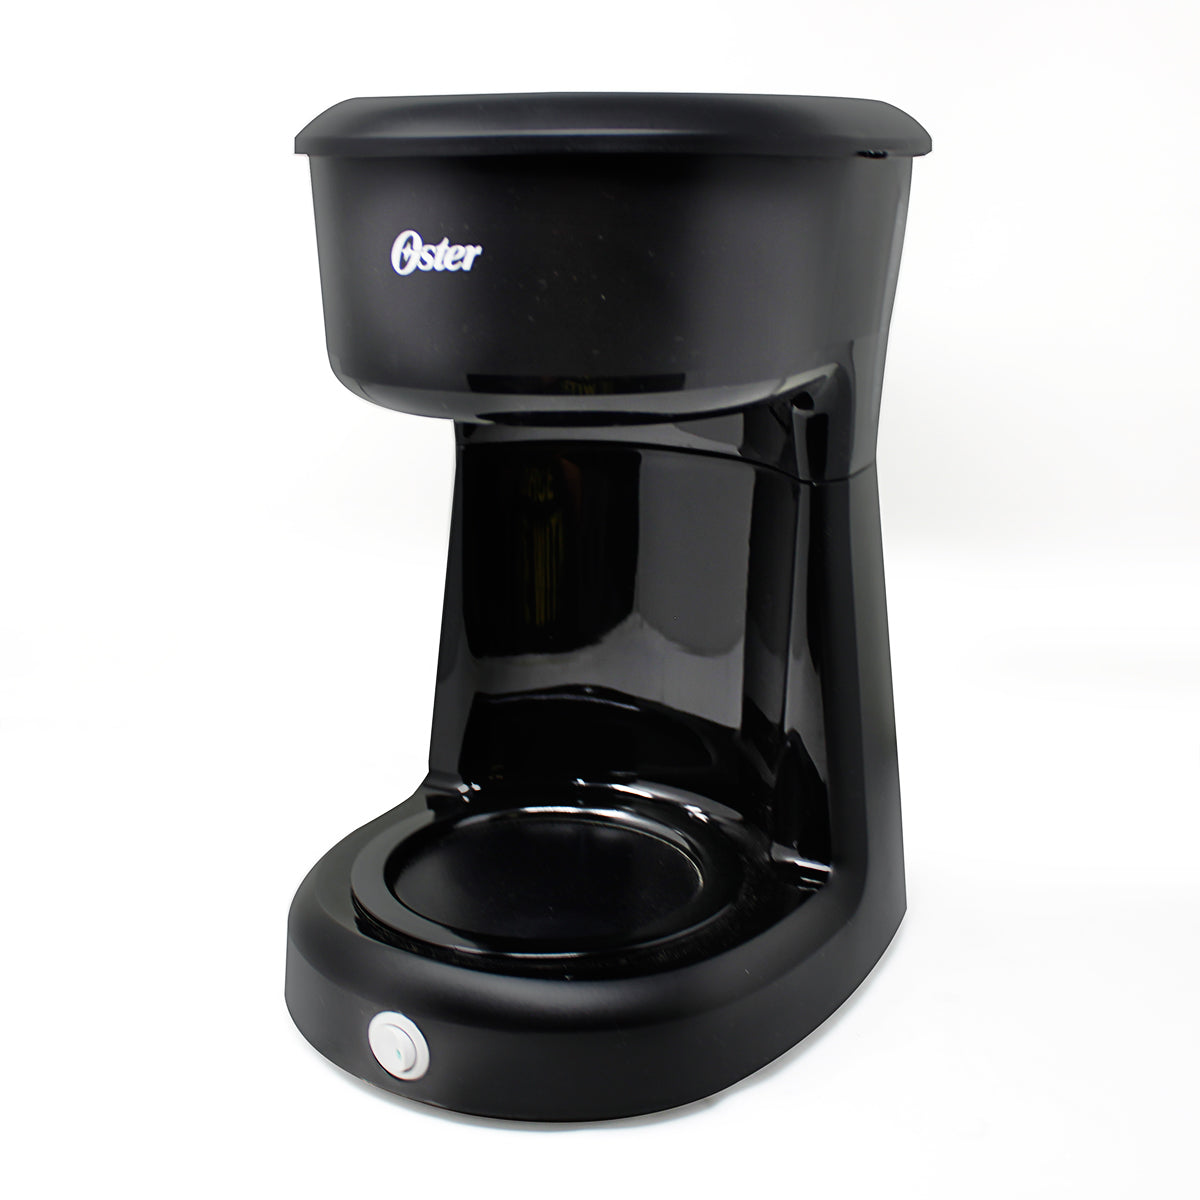 Cafetera Oster® de 12 tazas con filtro permanente BVSTDCS12B